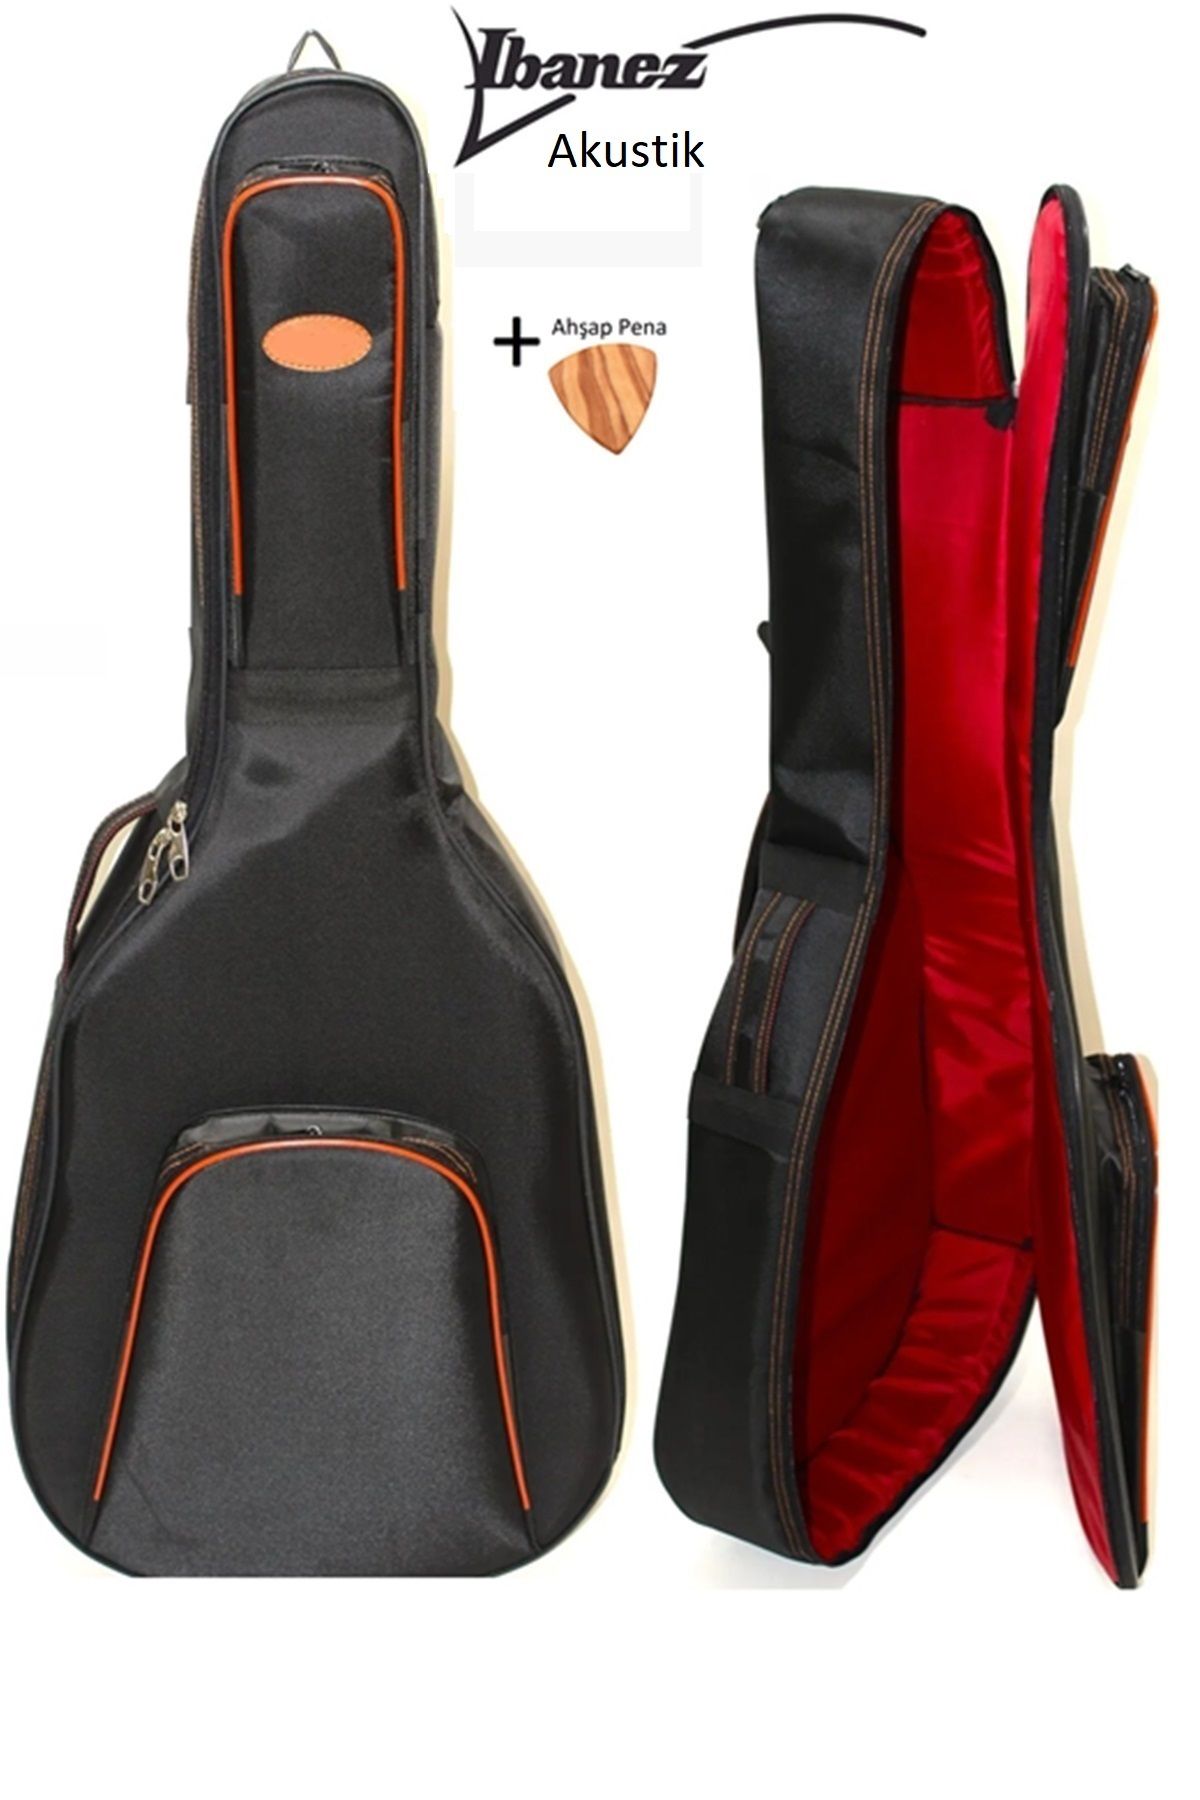 Ibanez Ultra Yüksek Koruma Ibanzez Elektro ve Akustik Gitar Kılıfı Taşıma Çantası Gigbag Soft Case